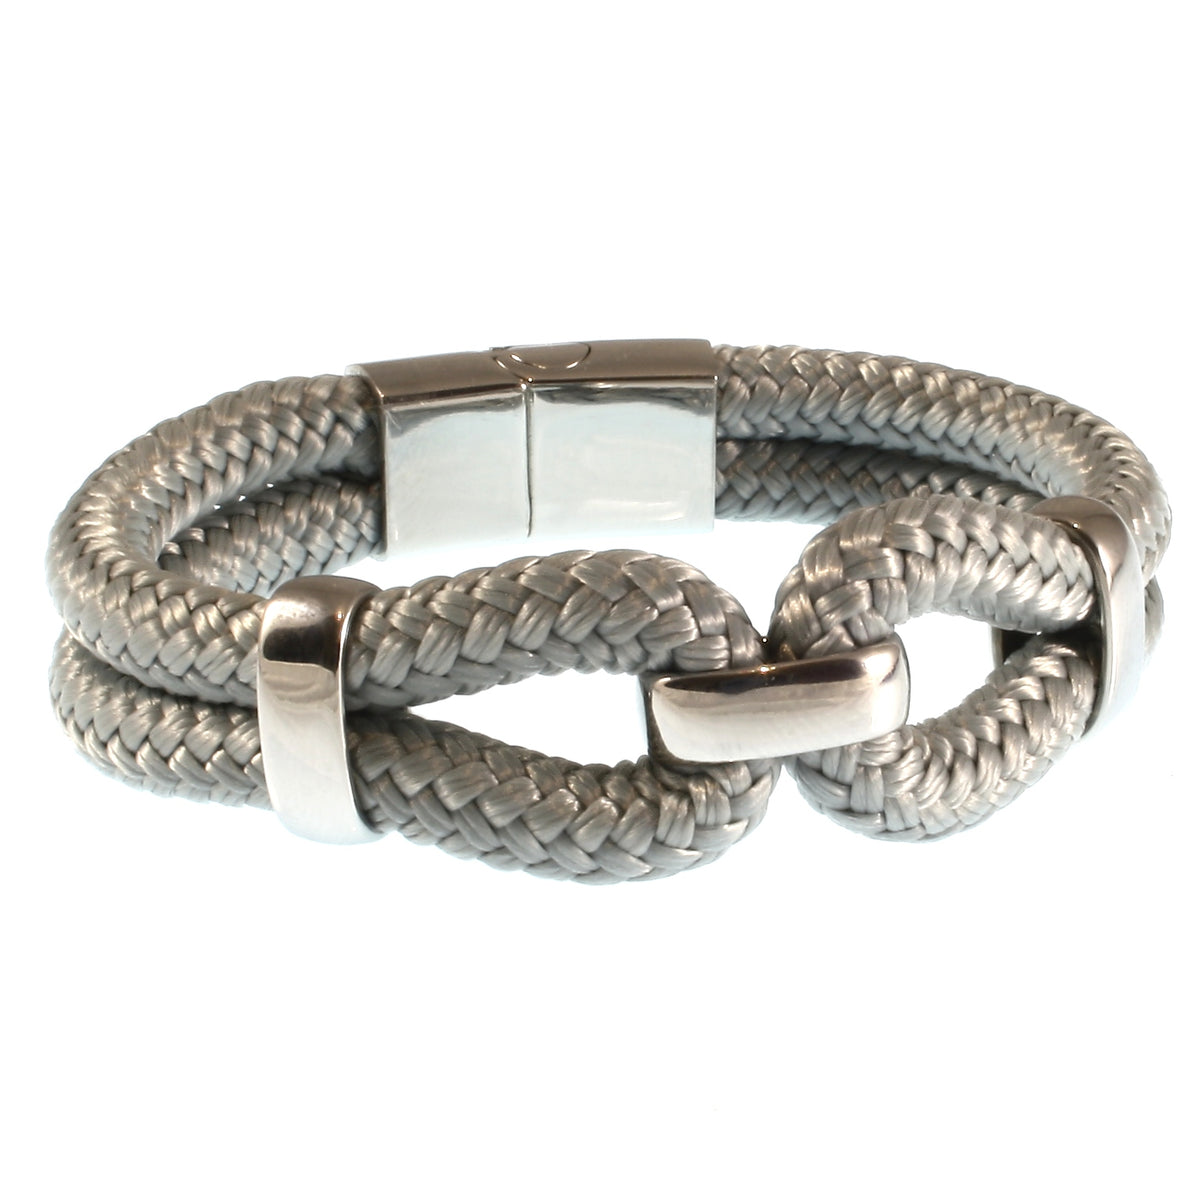 Damen-Segeltau-armband-roma-grau-geflochten-Edelstahlverschluss-vorn-wavepirate-shop-st